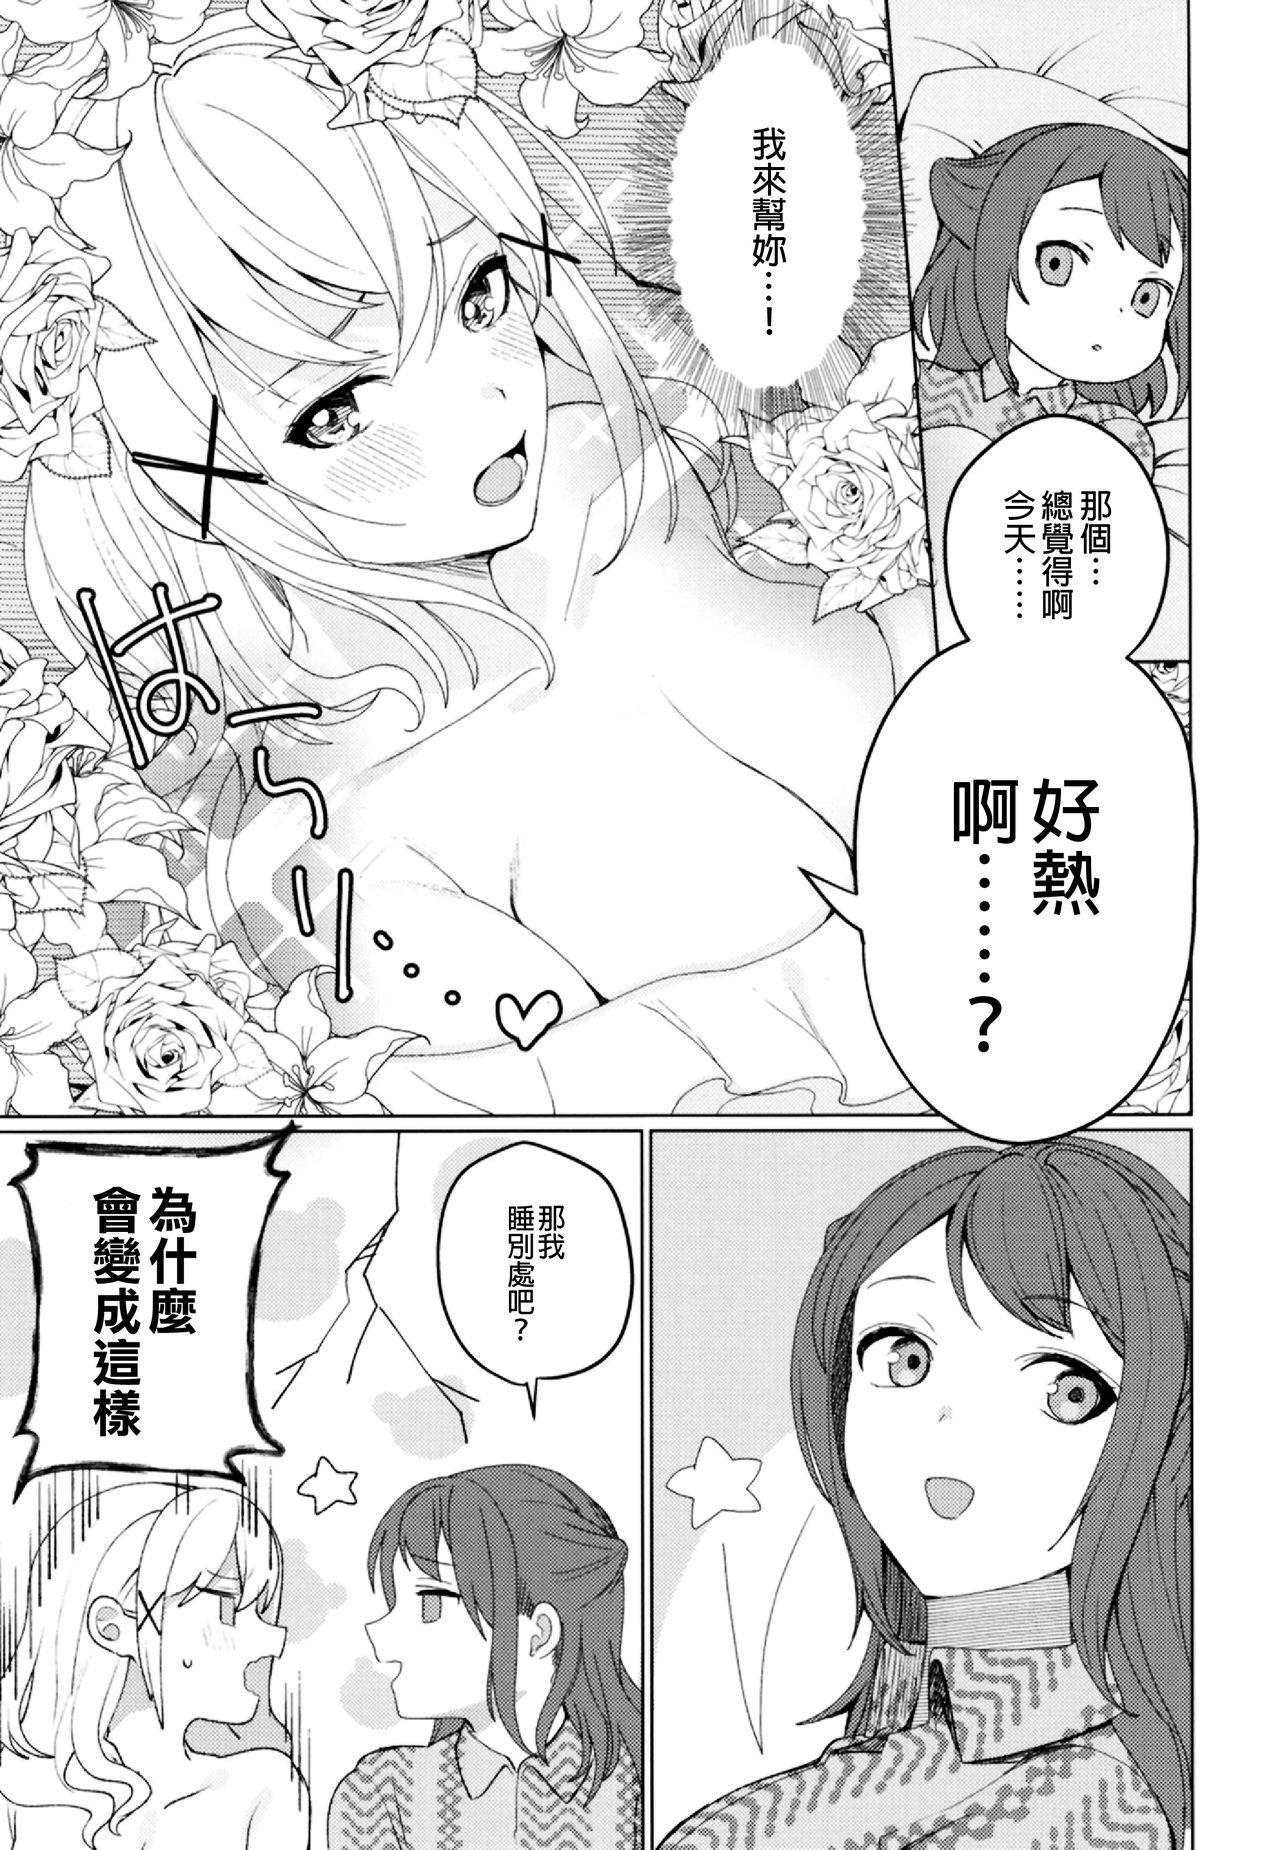 Tgirls Kimi to Kirakira | 與妳閃閃發光 - Bang dream Puba - Page 8